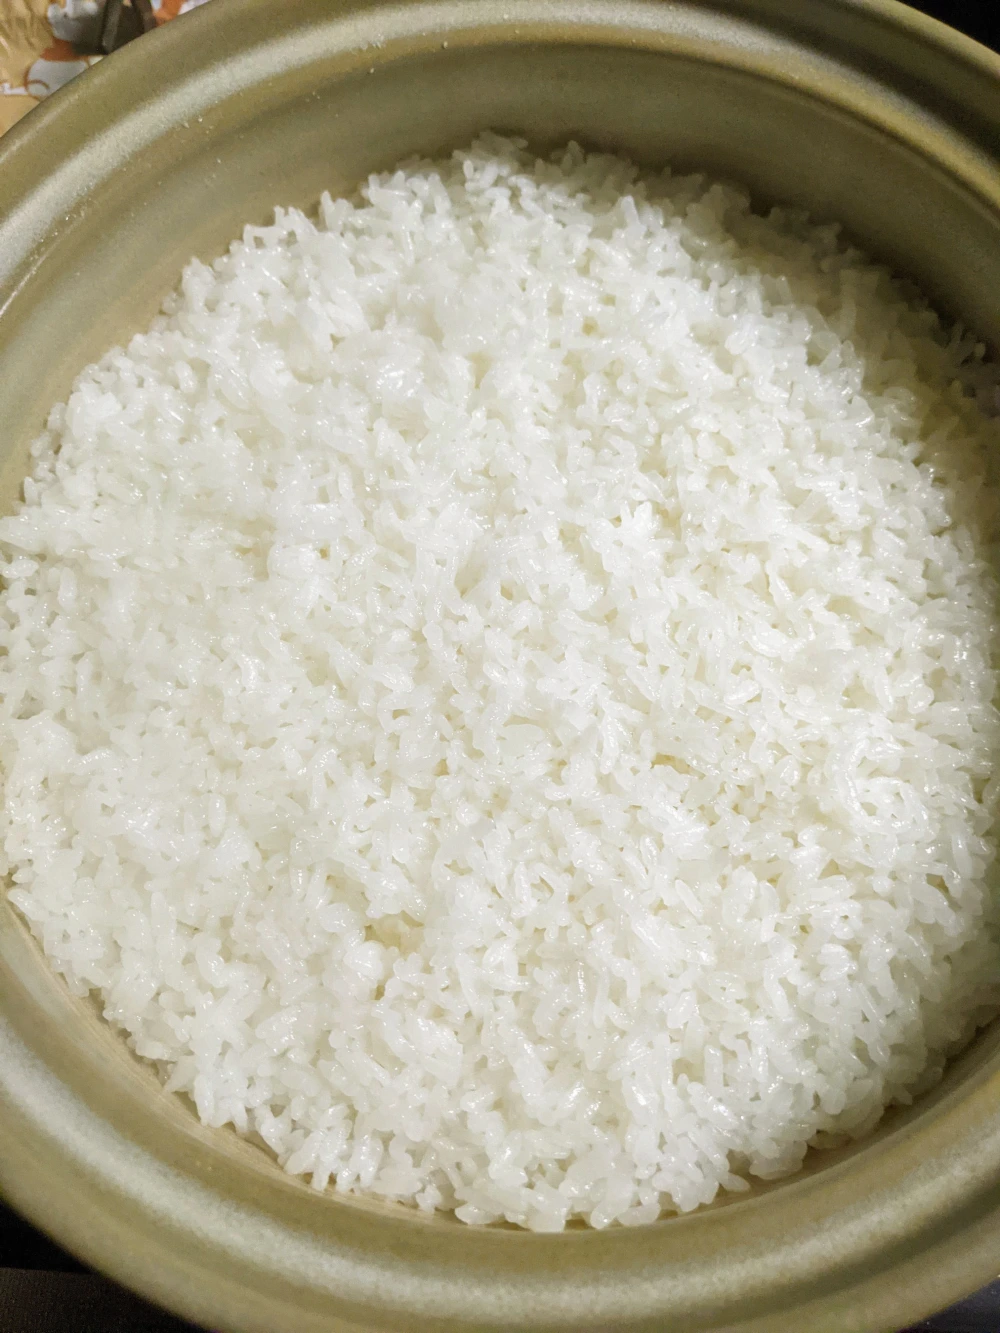 自然栽培のお米 コシヒカリ『玄米』